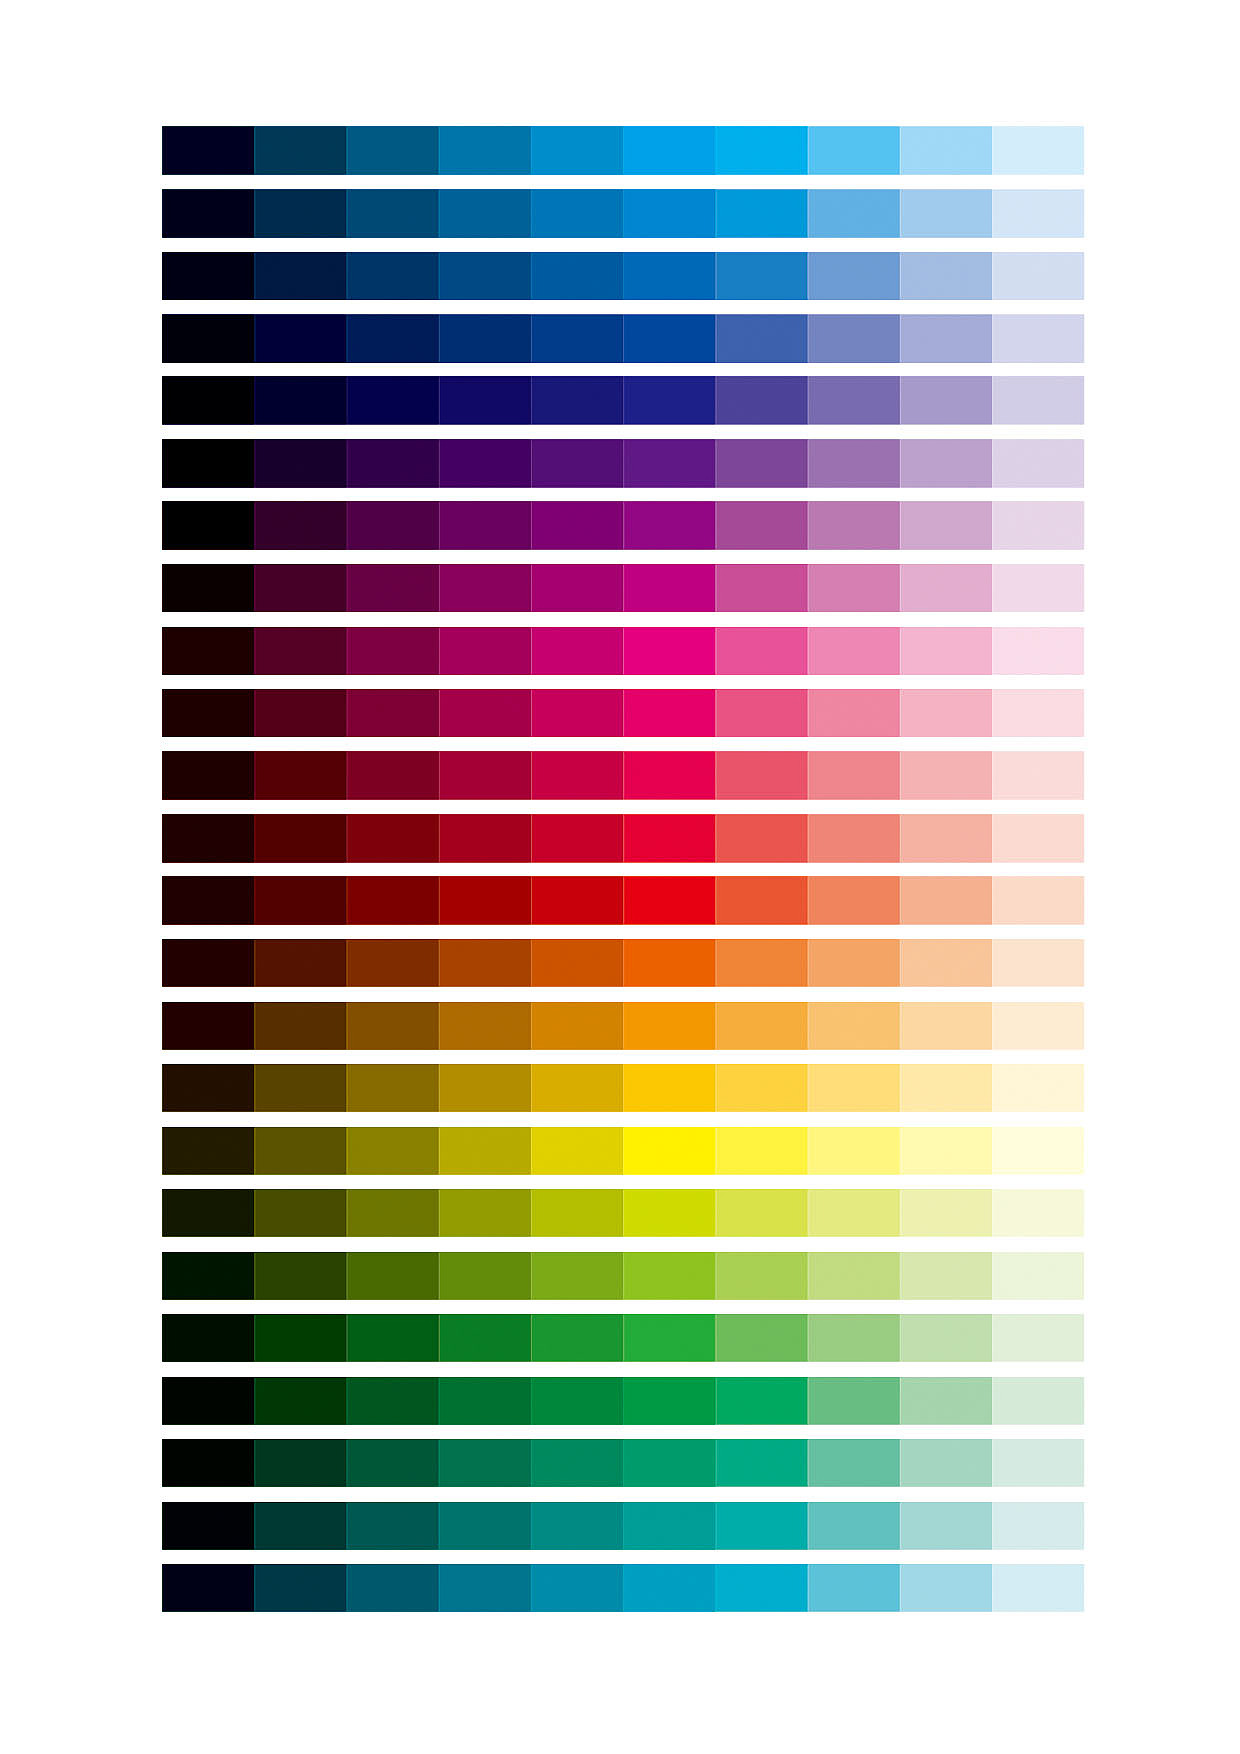 網頁設計技巧：如何通過界面顏色增加網頁的吸引力